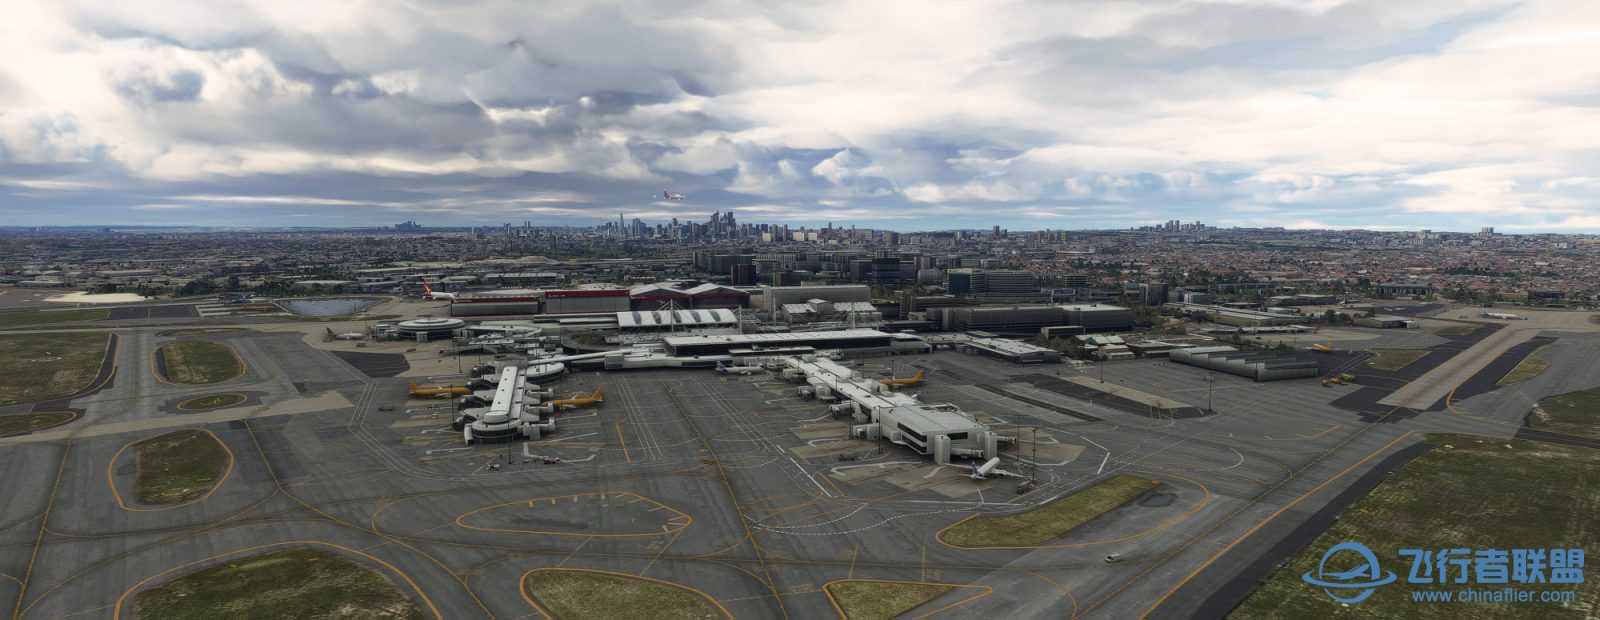 FlyTampa悉尼机场预览和加入Orbx合作计划-9874 